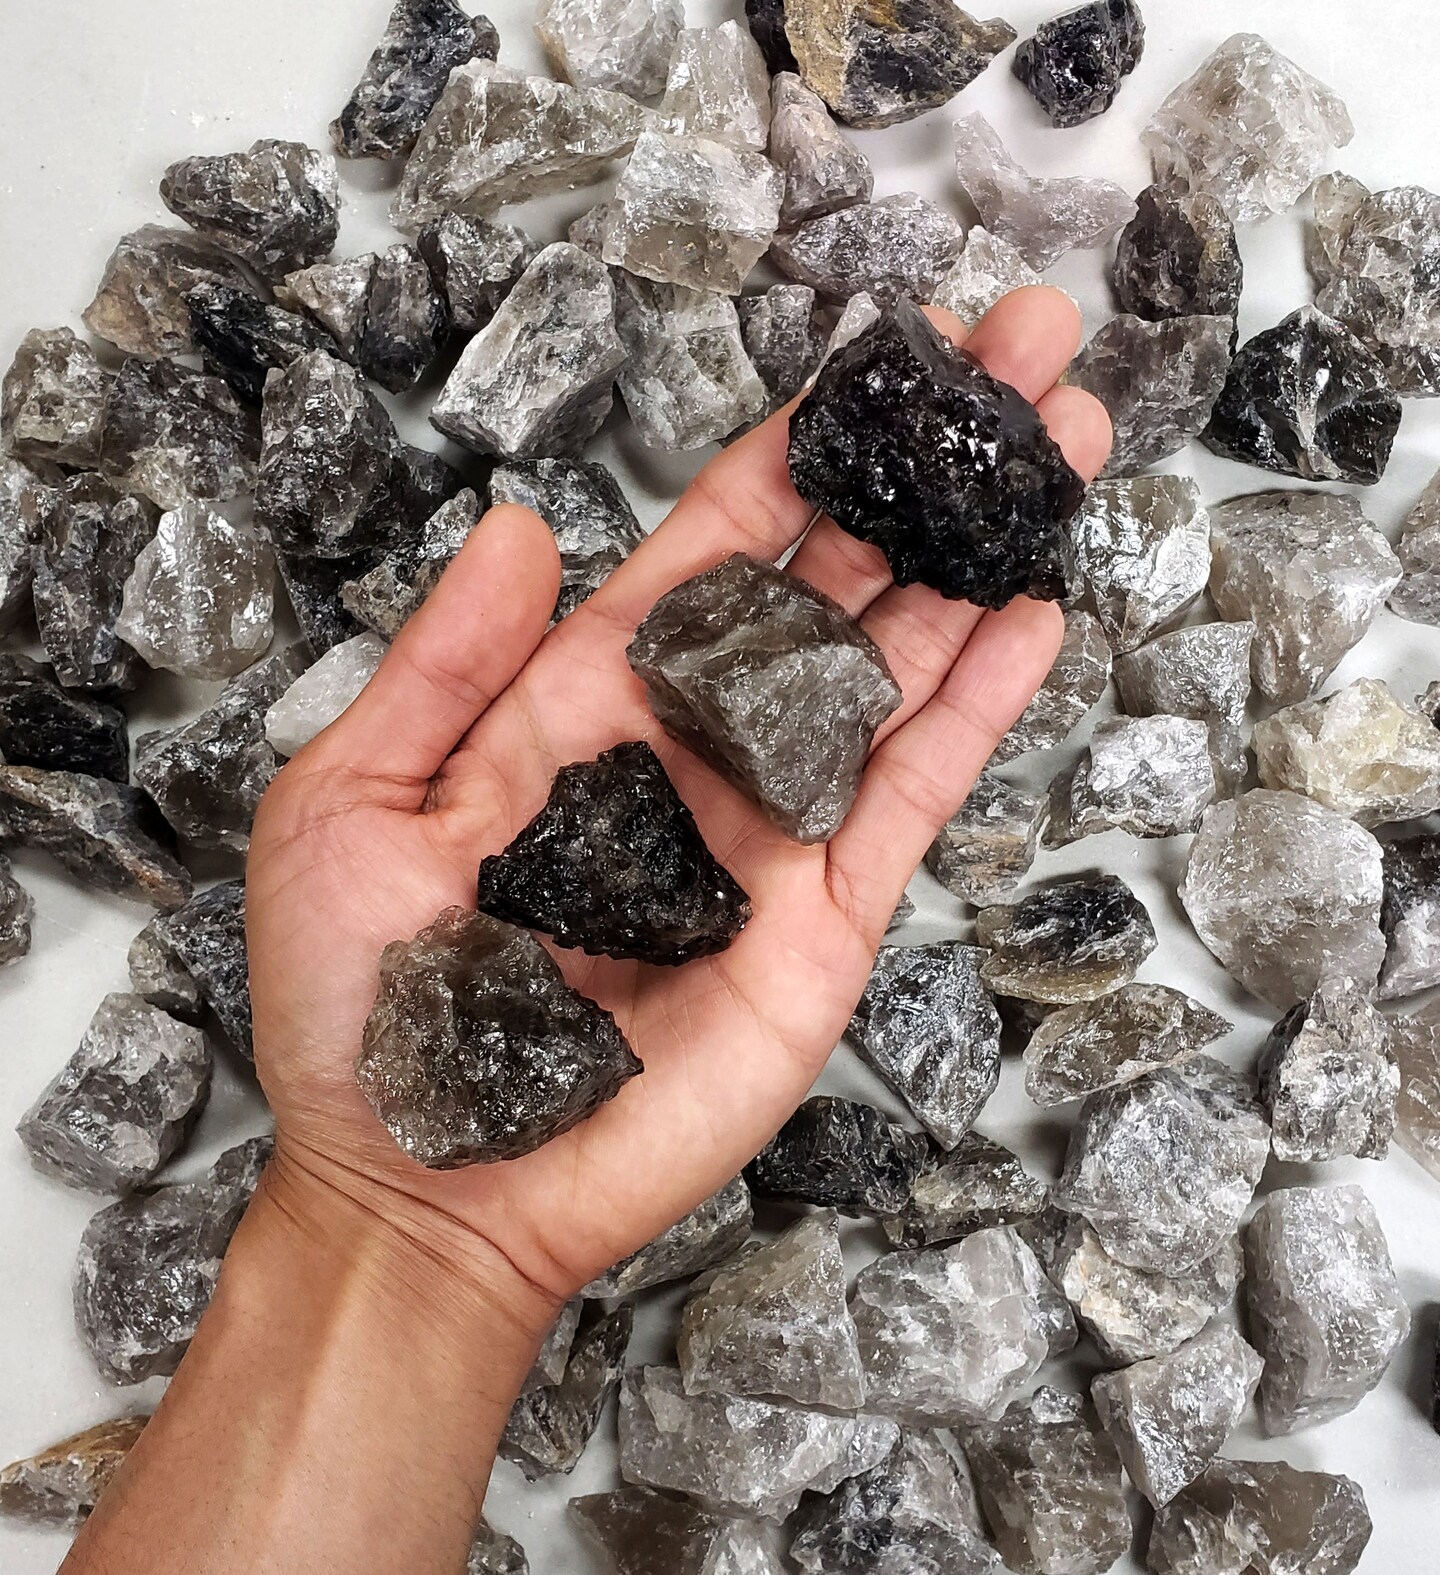 Smoky Quartz Crystals - Rough Stones Bulk